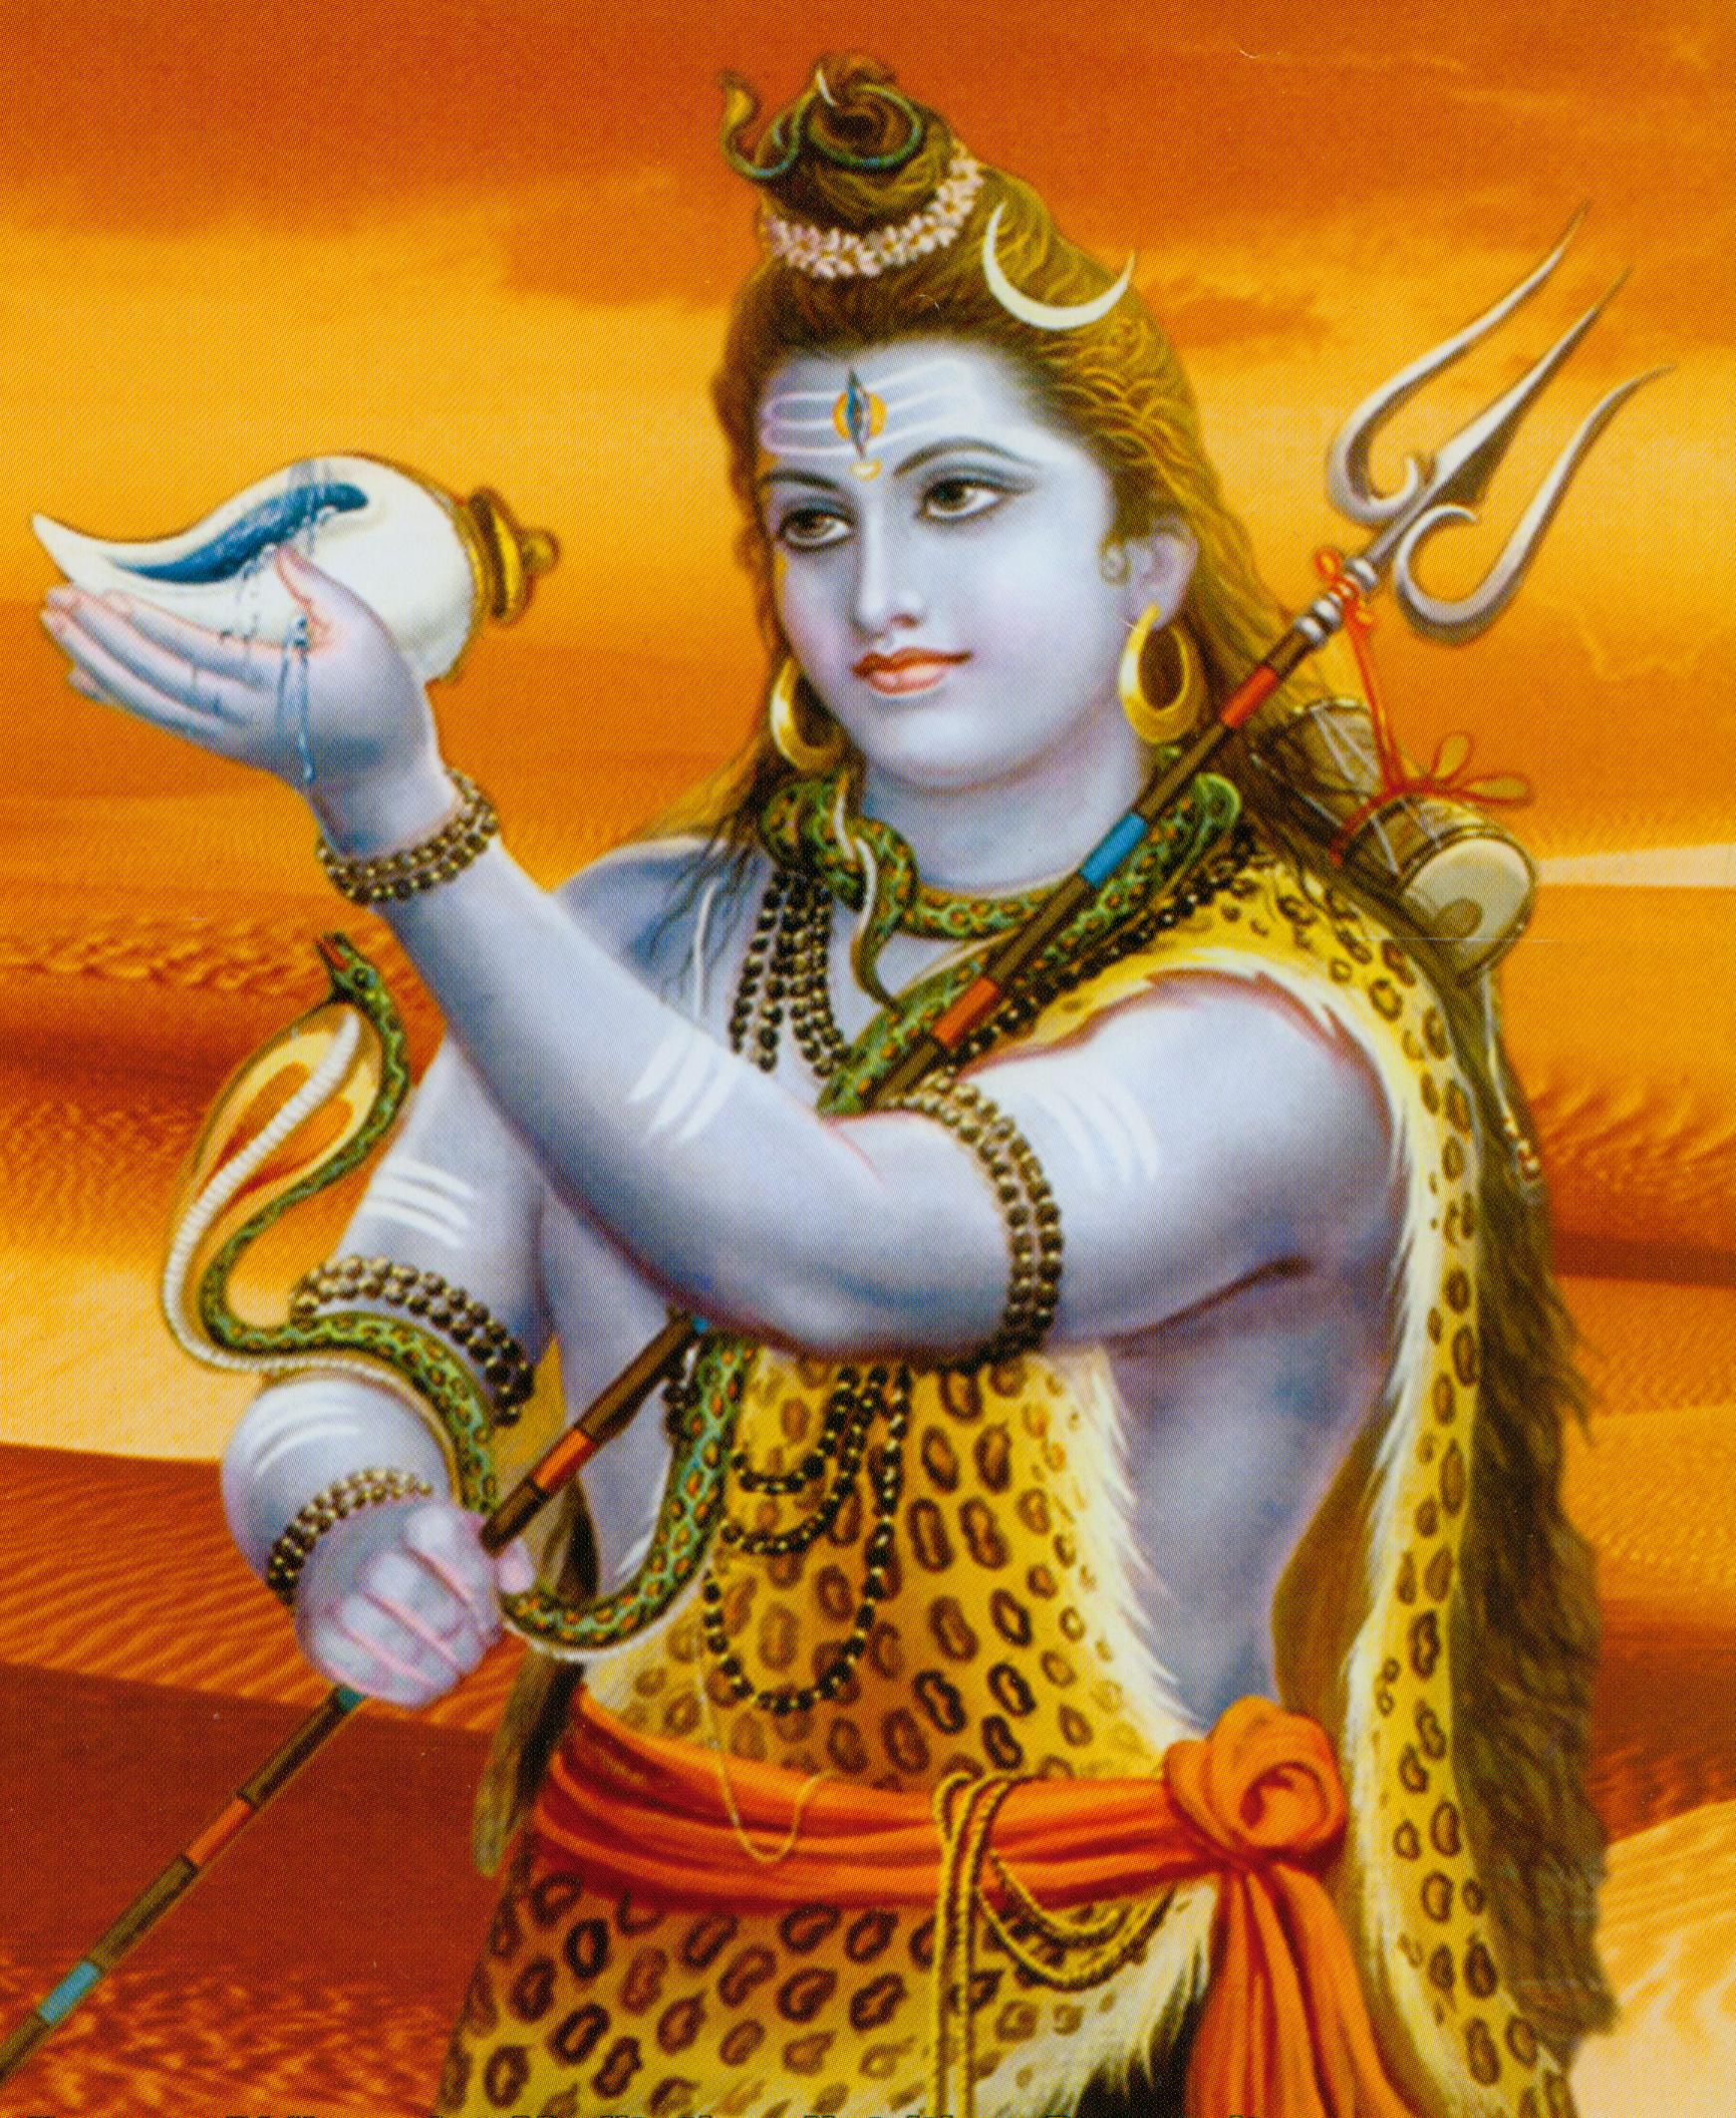 Lord Shiva Photos